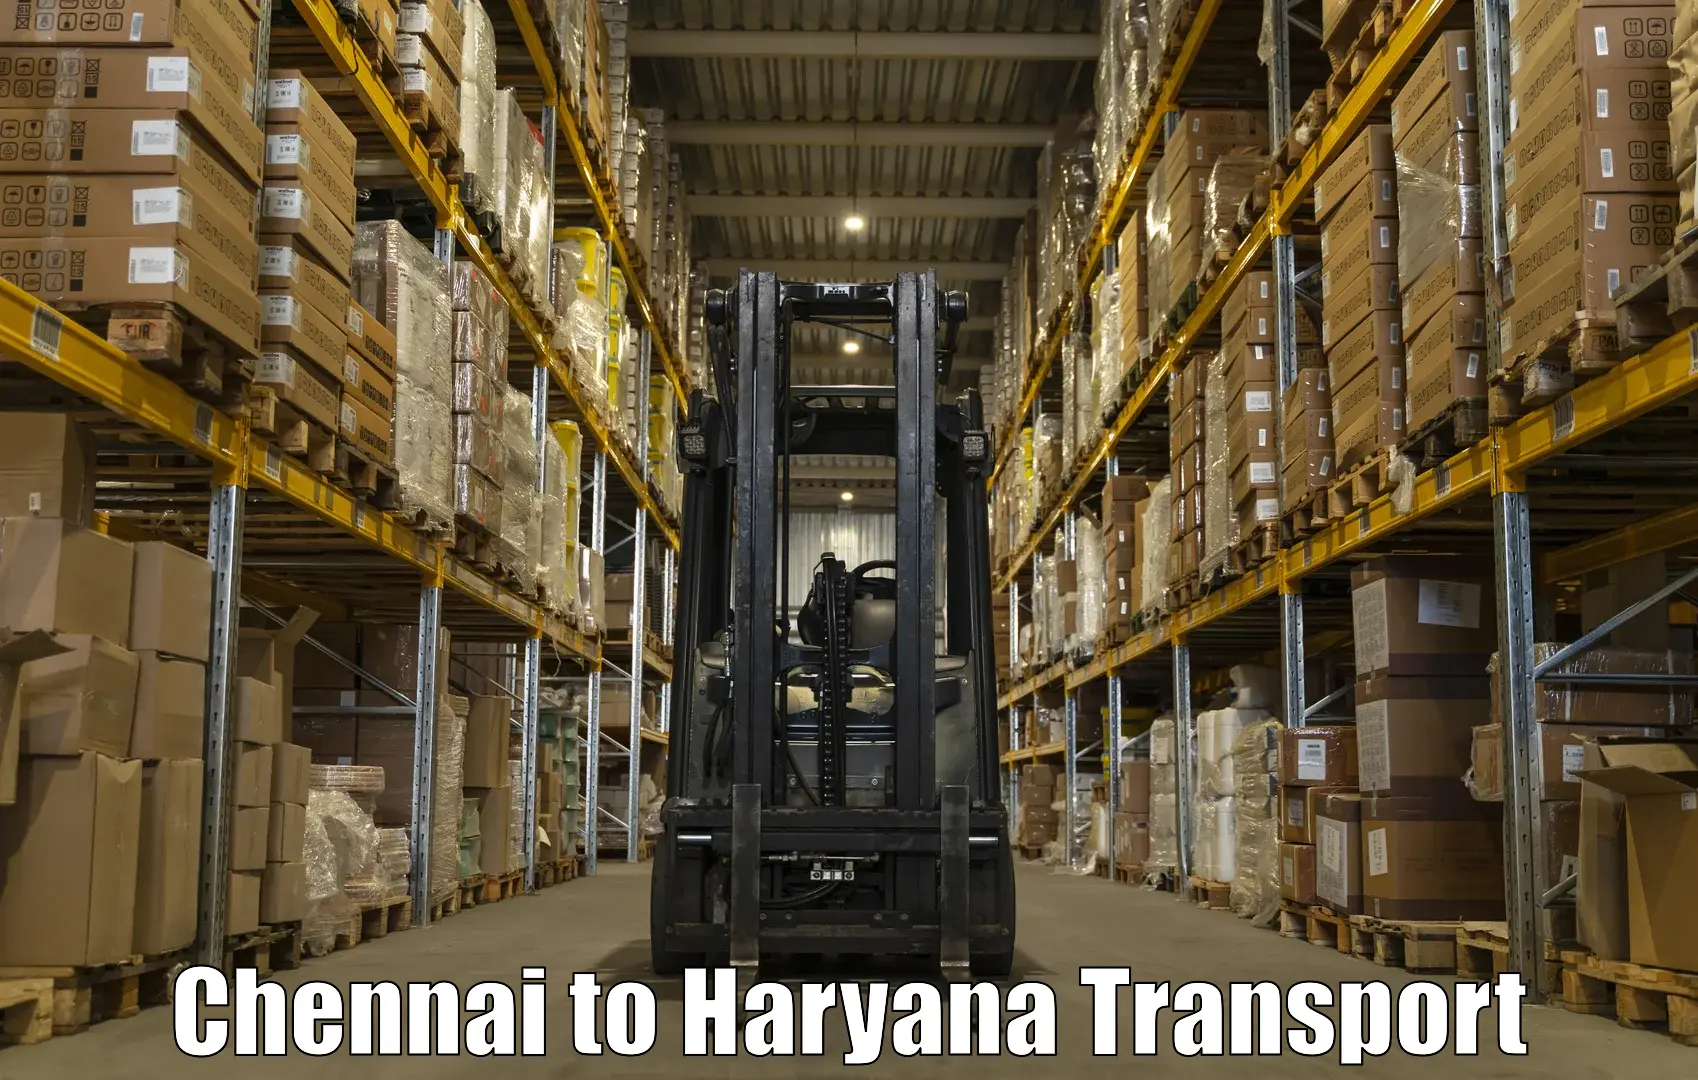 Daily transport service Chennai to Haryana